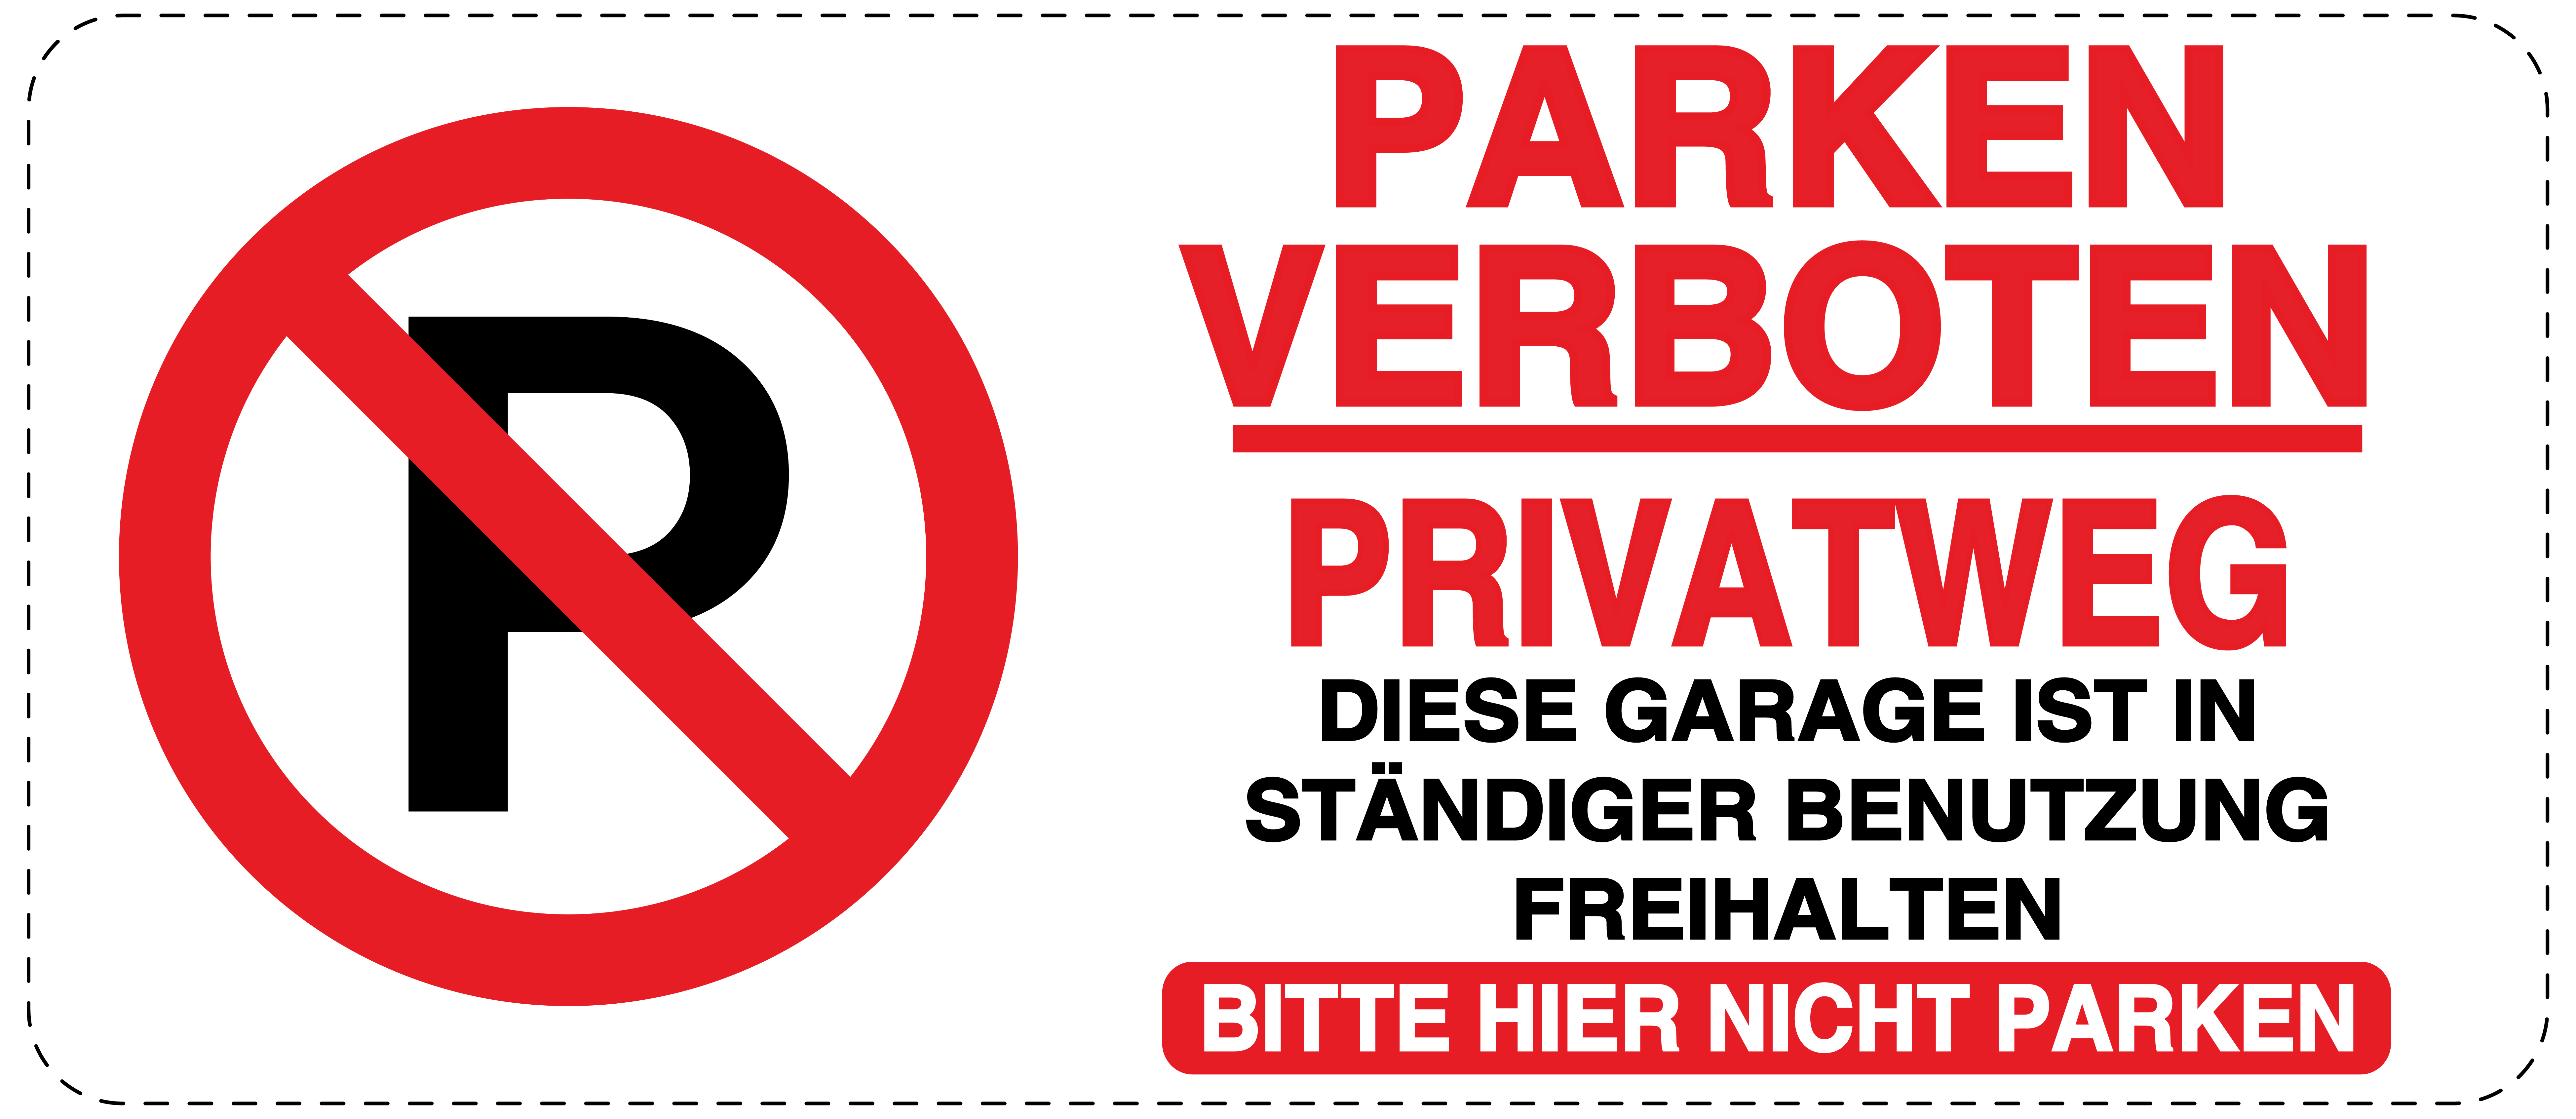 Parken verboten Privatweg Garage in Benutzung Aufkleber 30x20cm